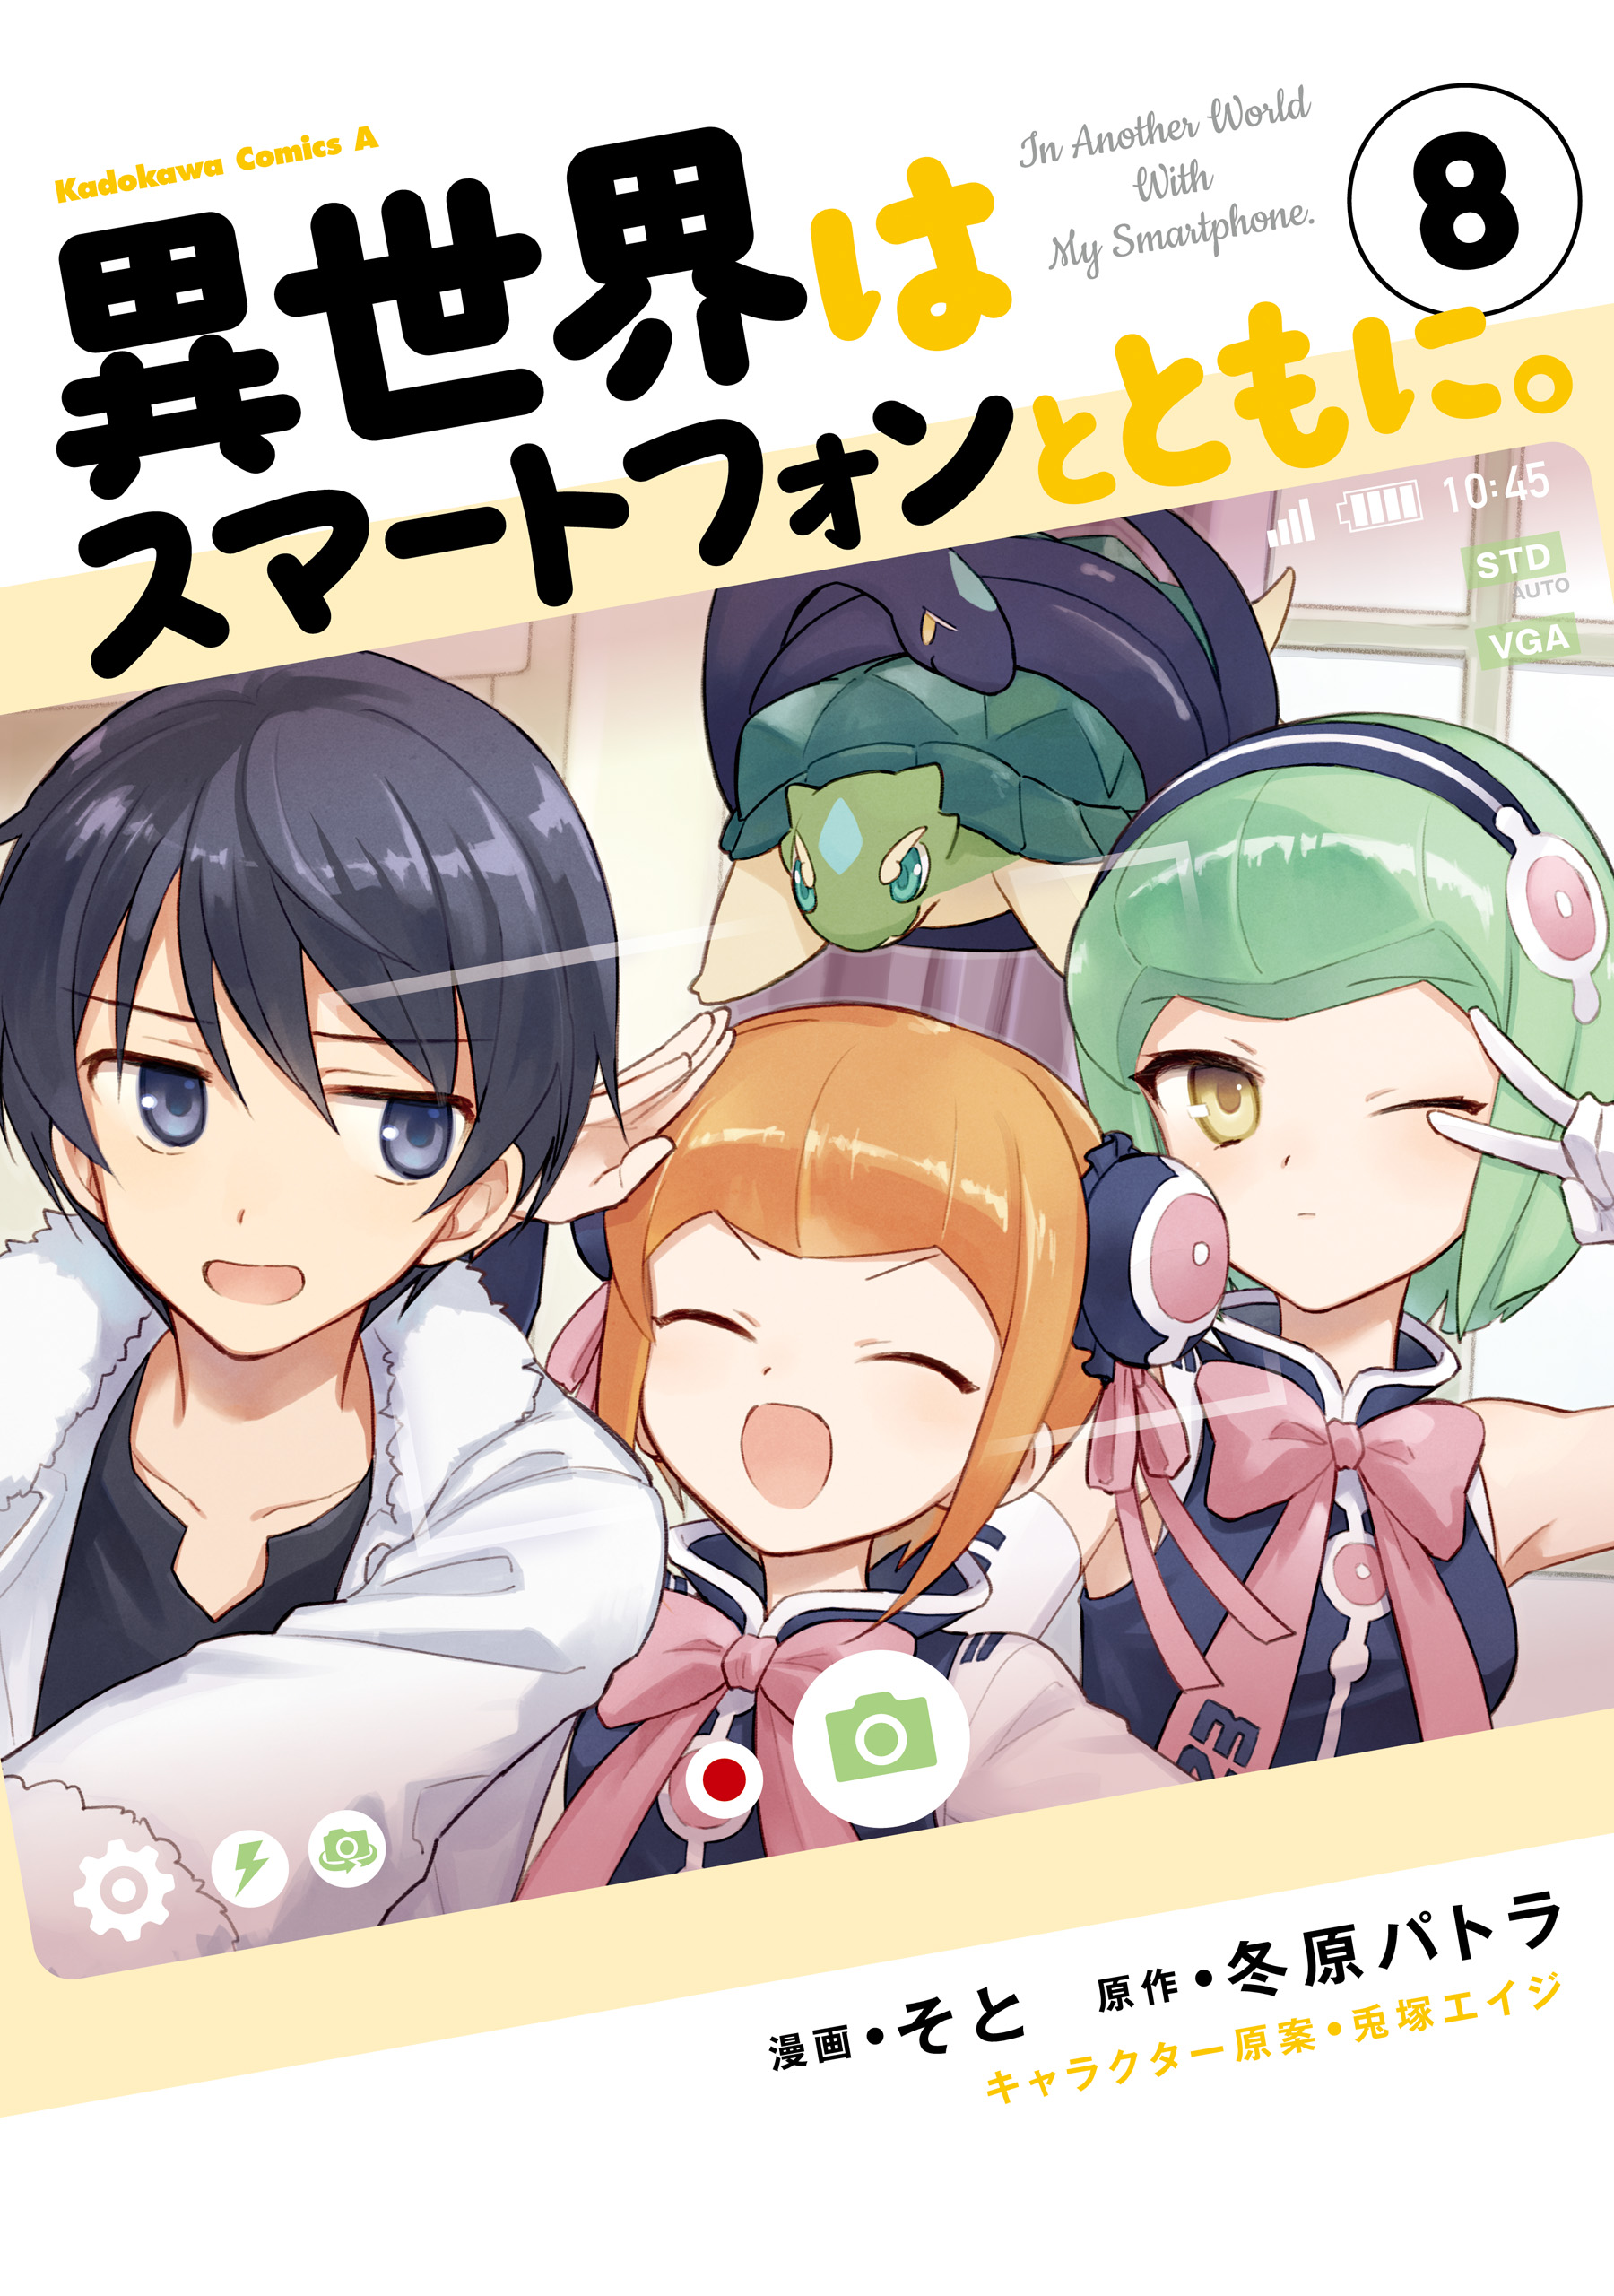 Isekai wa smartphone manga